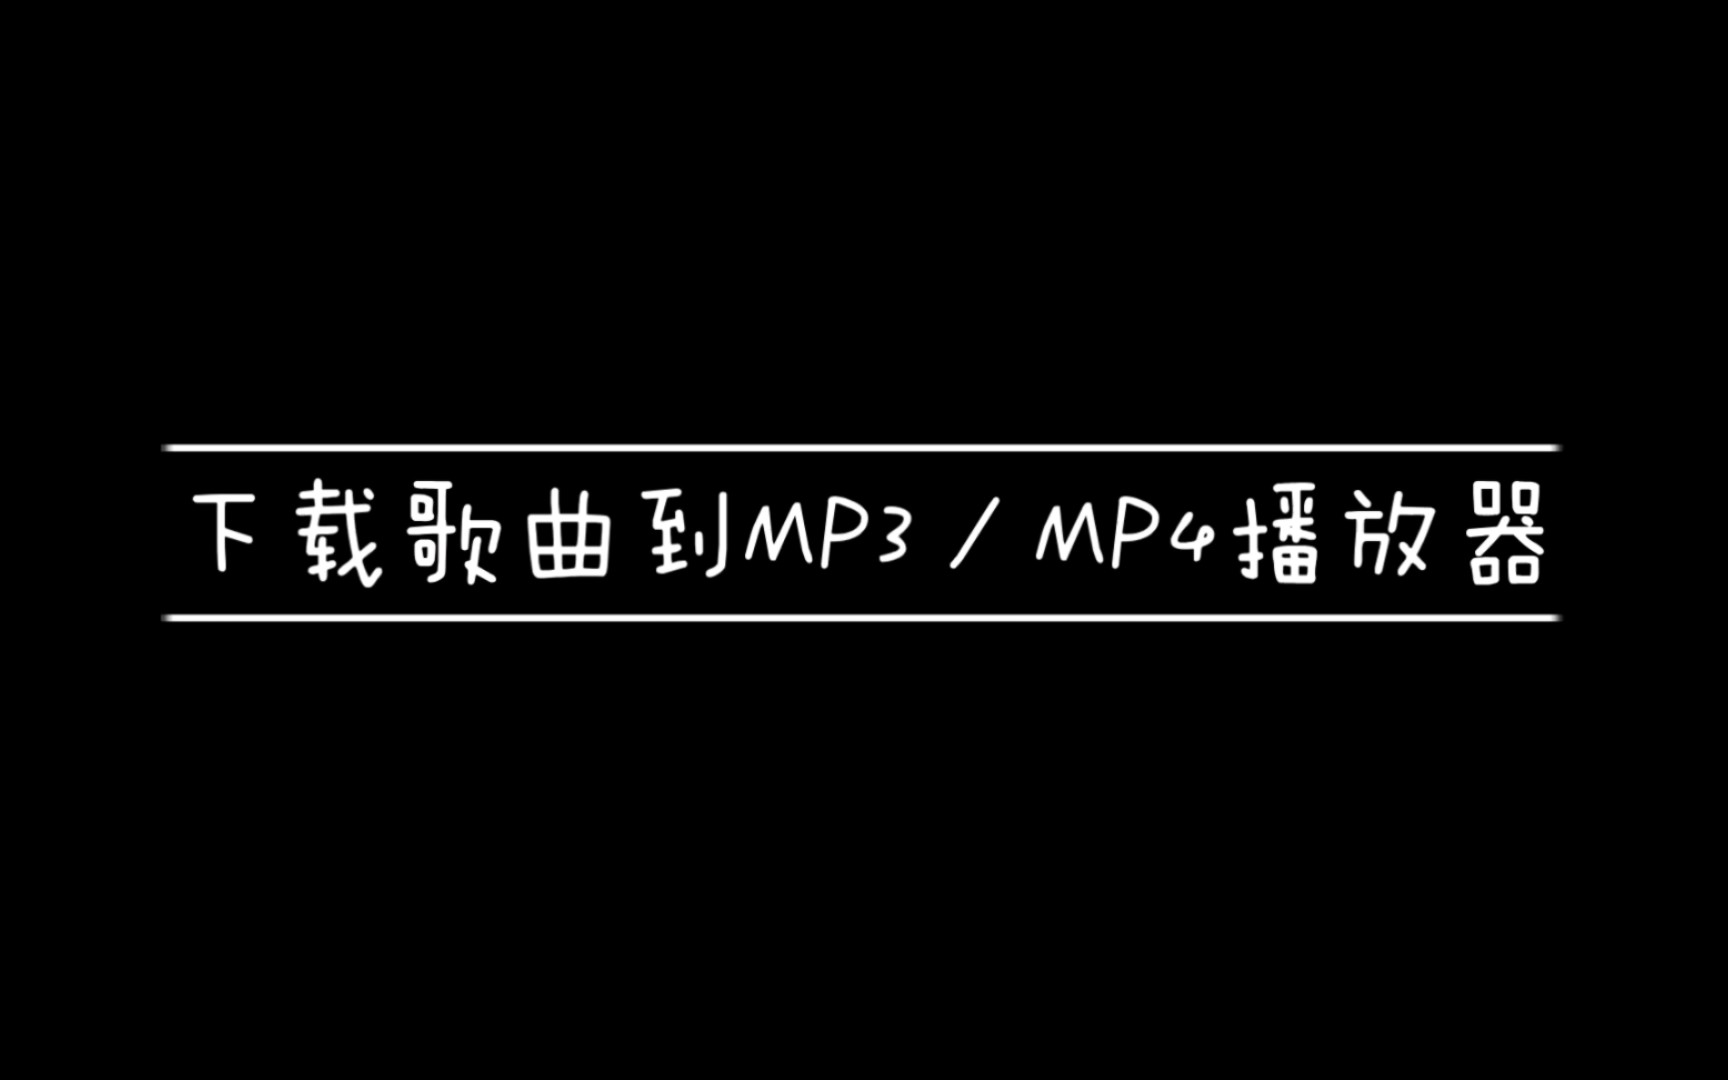 [图]把歌曲下载到MP3/MP4的方法